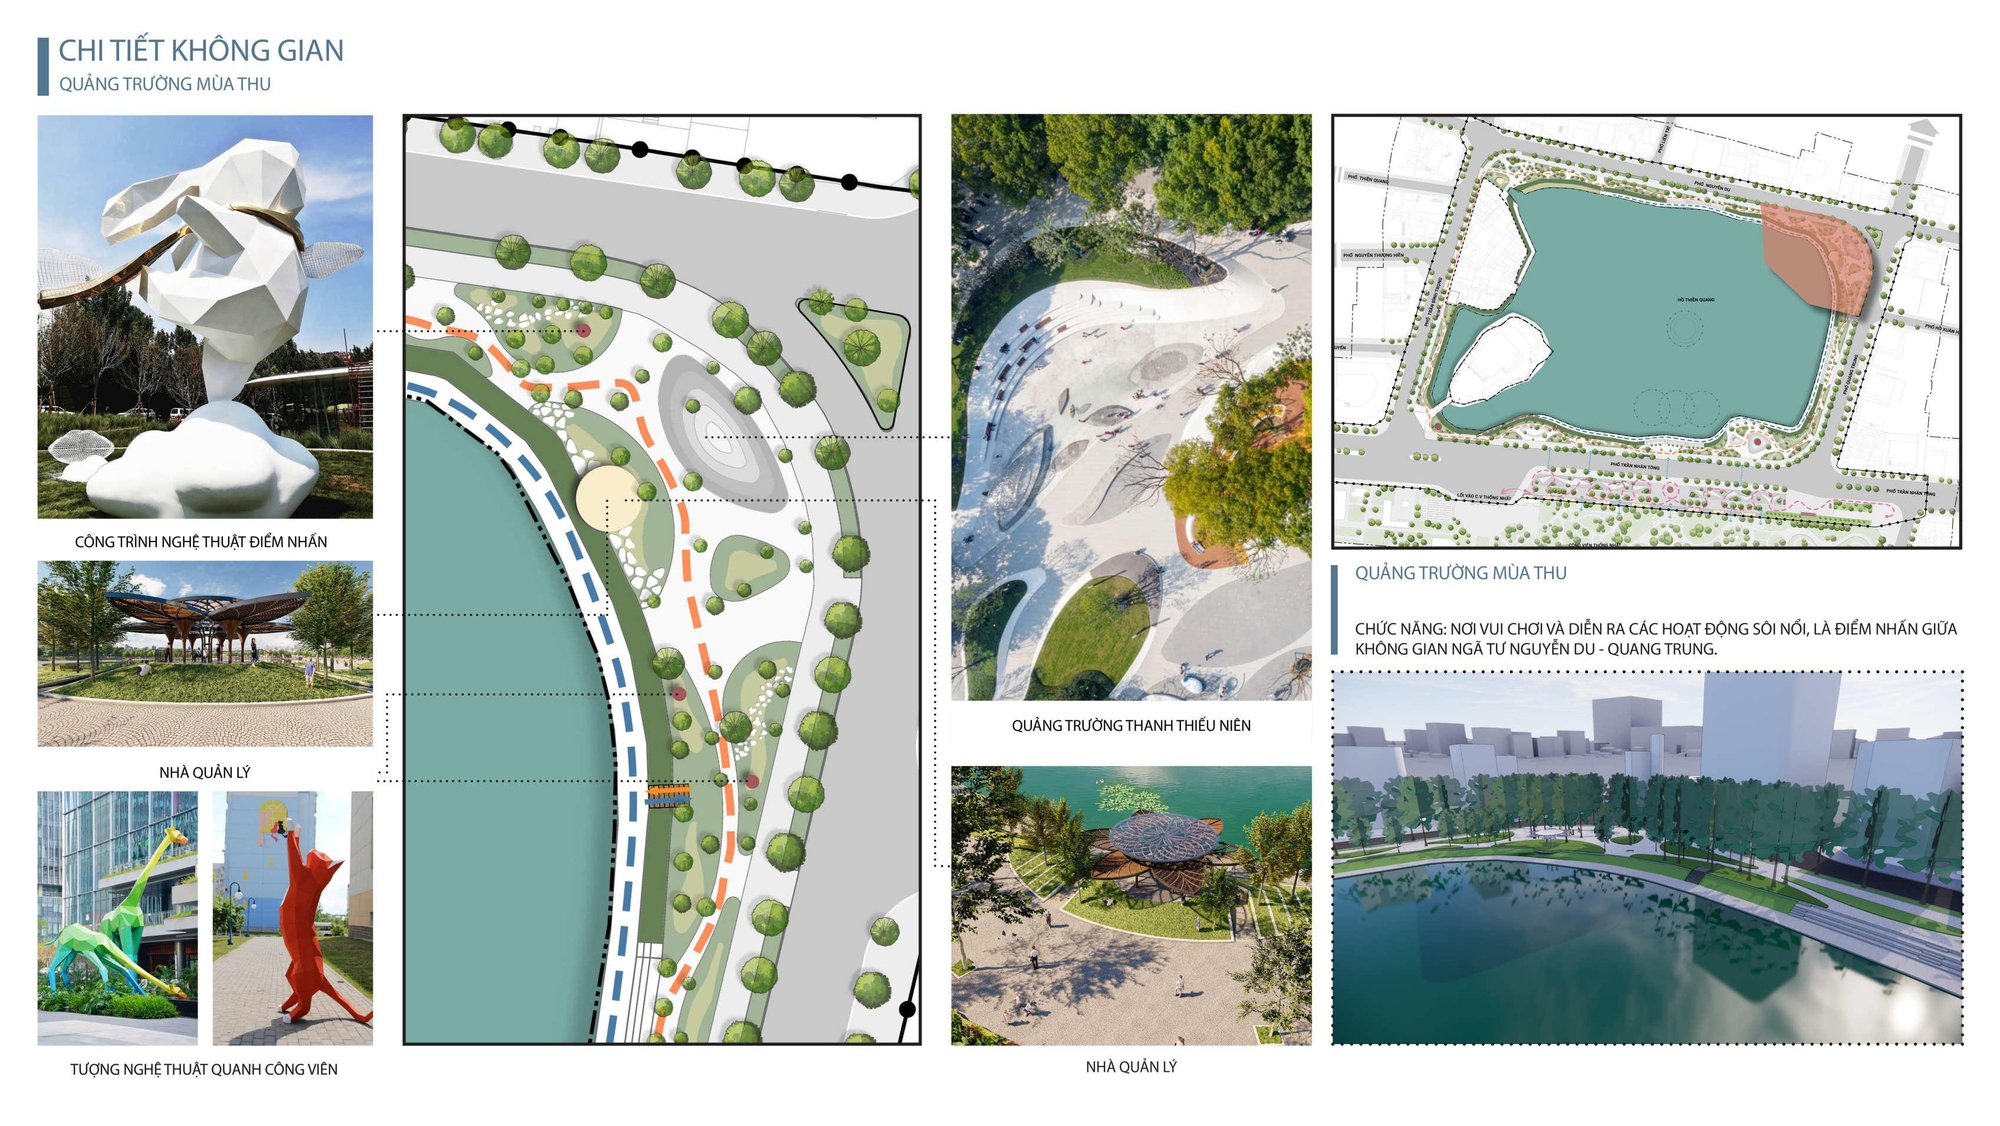 Ngắm diện mạo 5 quảng trường đang được đề xuất xây dựng quanh hồ Thiền Quang - Ảnh 5.